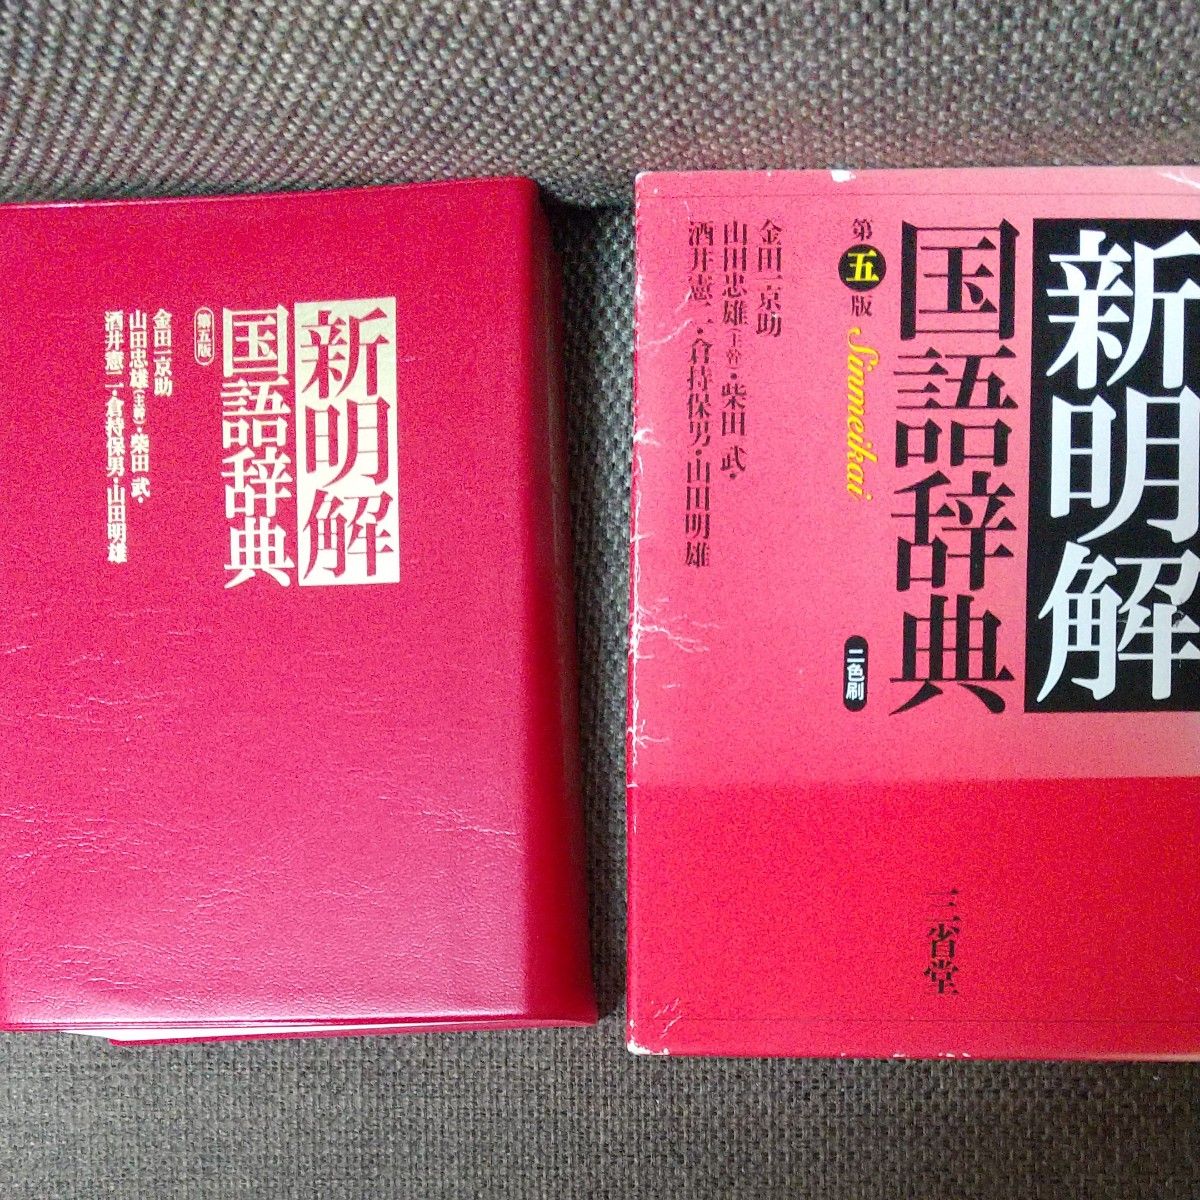 新明解国語辞典 三省堂 山田忠雄 2000年10月第22刷発行